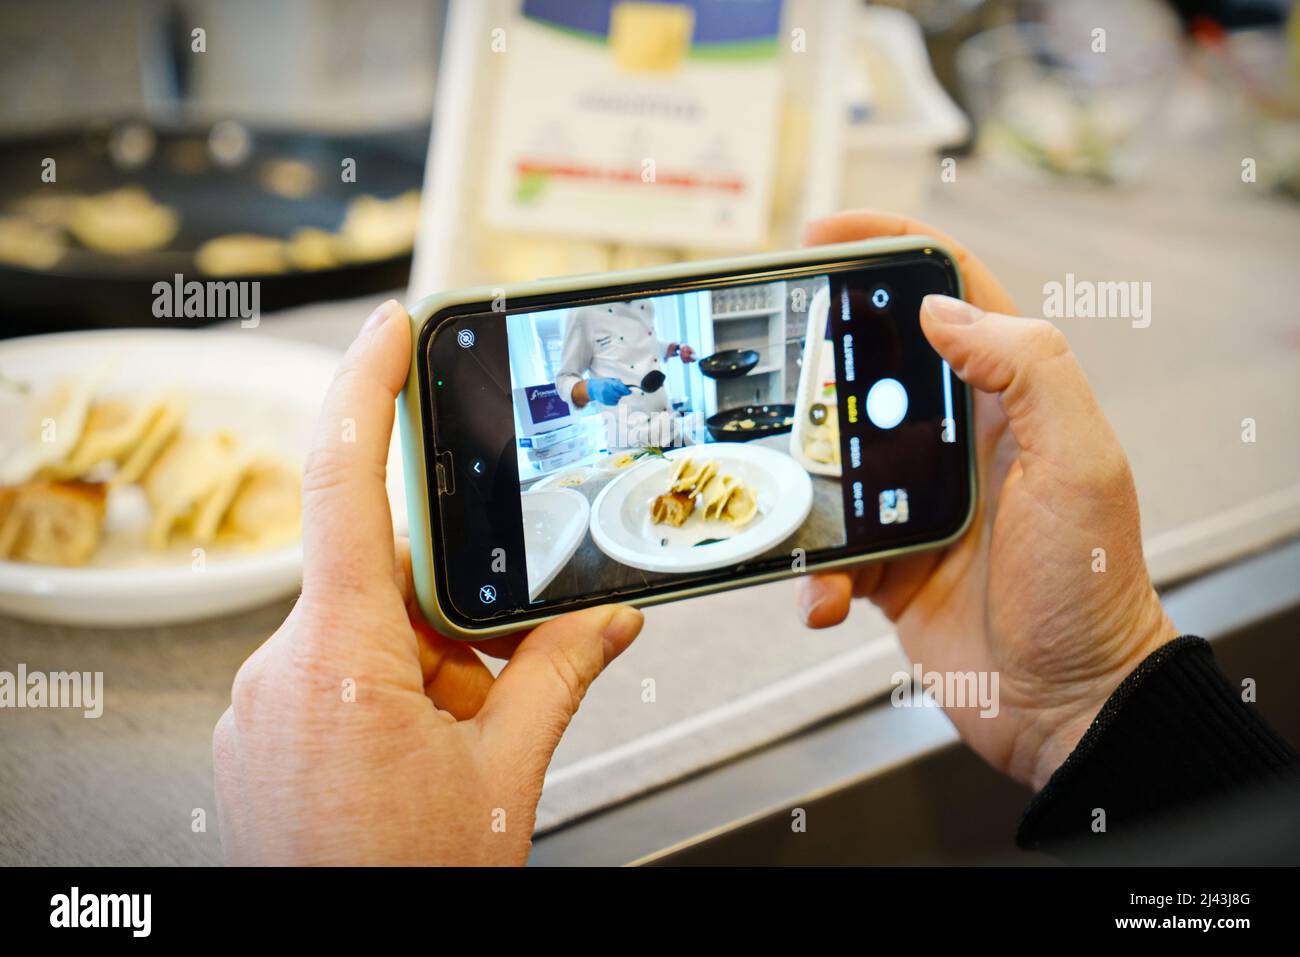 Mains prendre des photos avec le téléphone portable de cuisinier dans un atelier de cuisine. Mise au point sélective sur le téléphone mobile au premier plan. Milan, Italie - Mars 2022 Banque D'Images